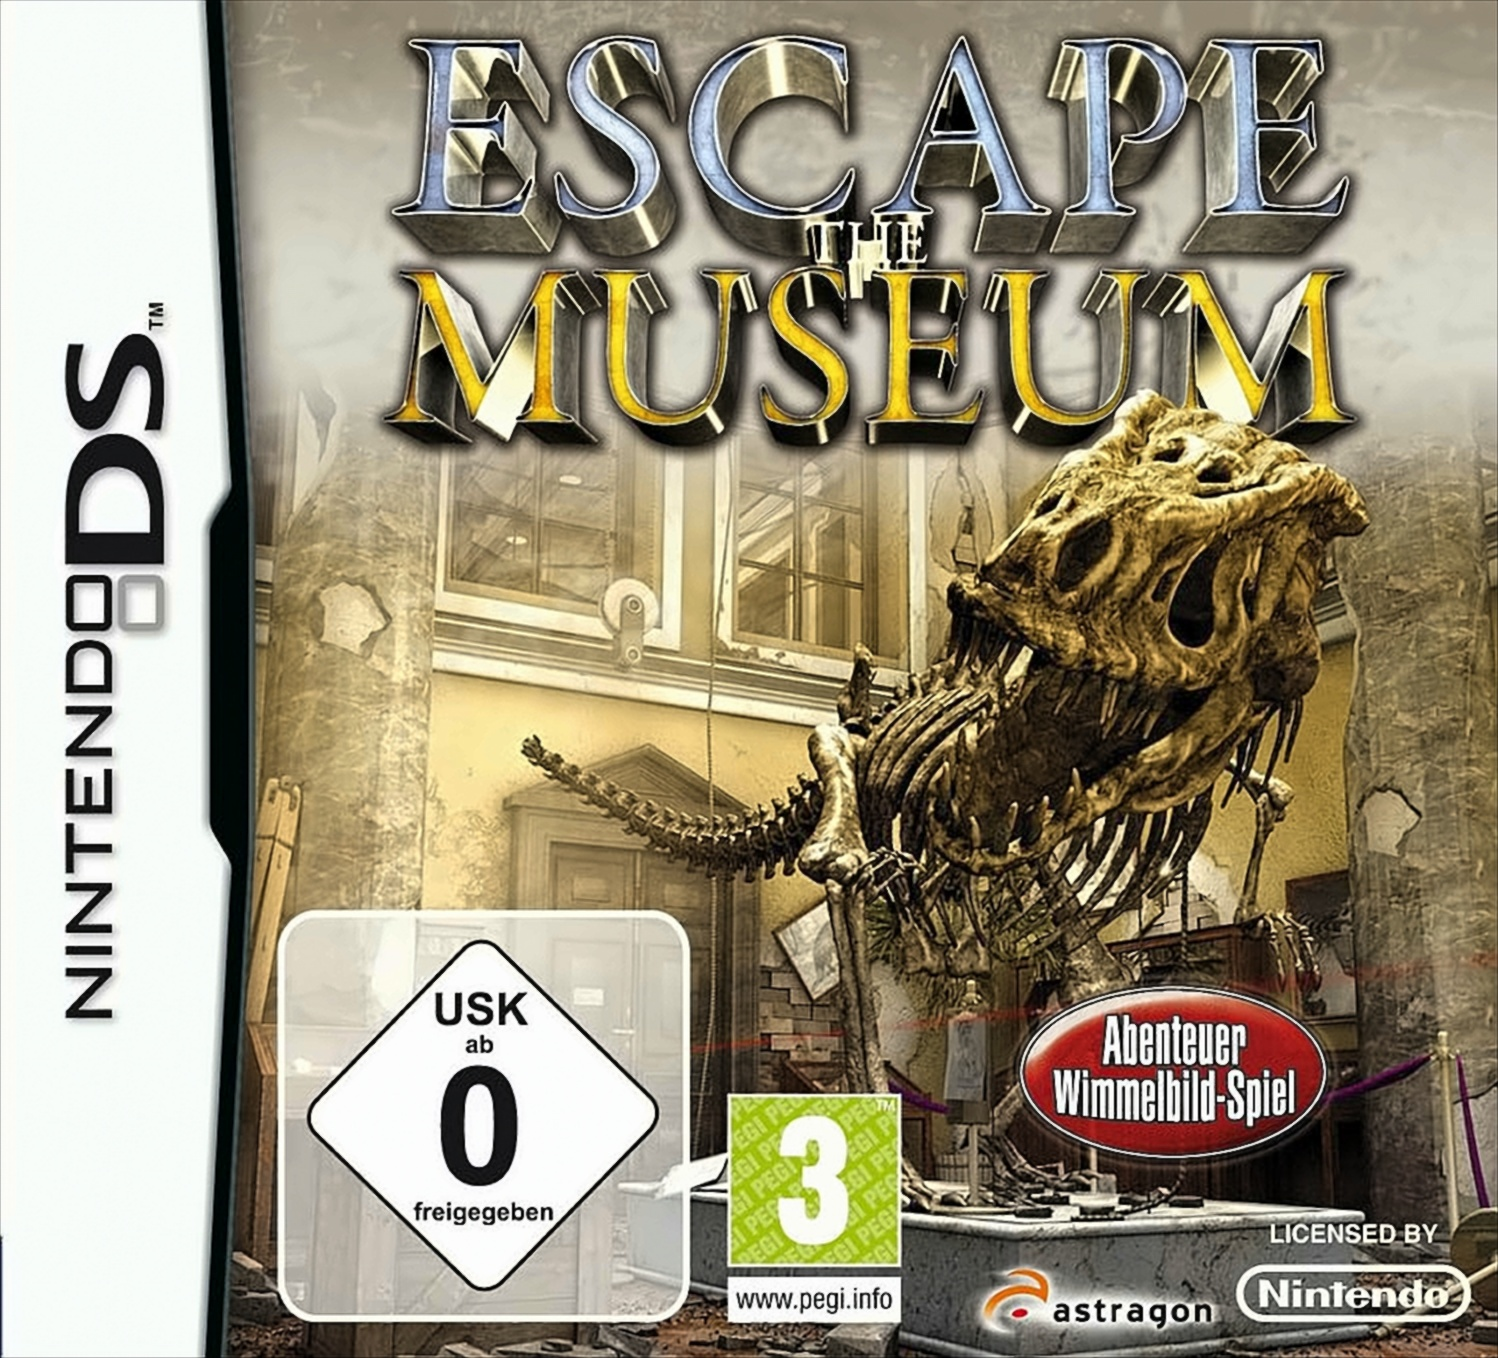 The Escape Museum DS] - [Nintendo